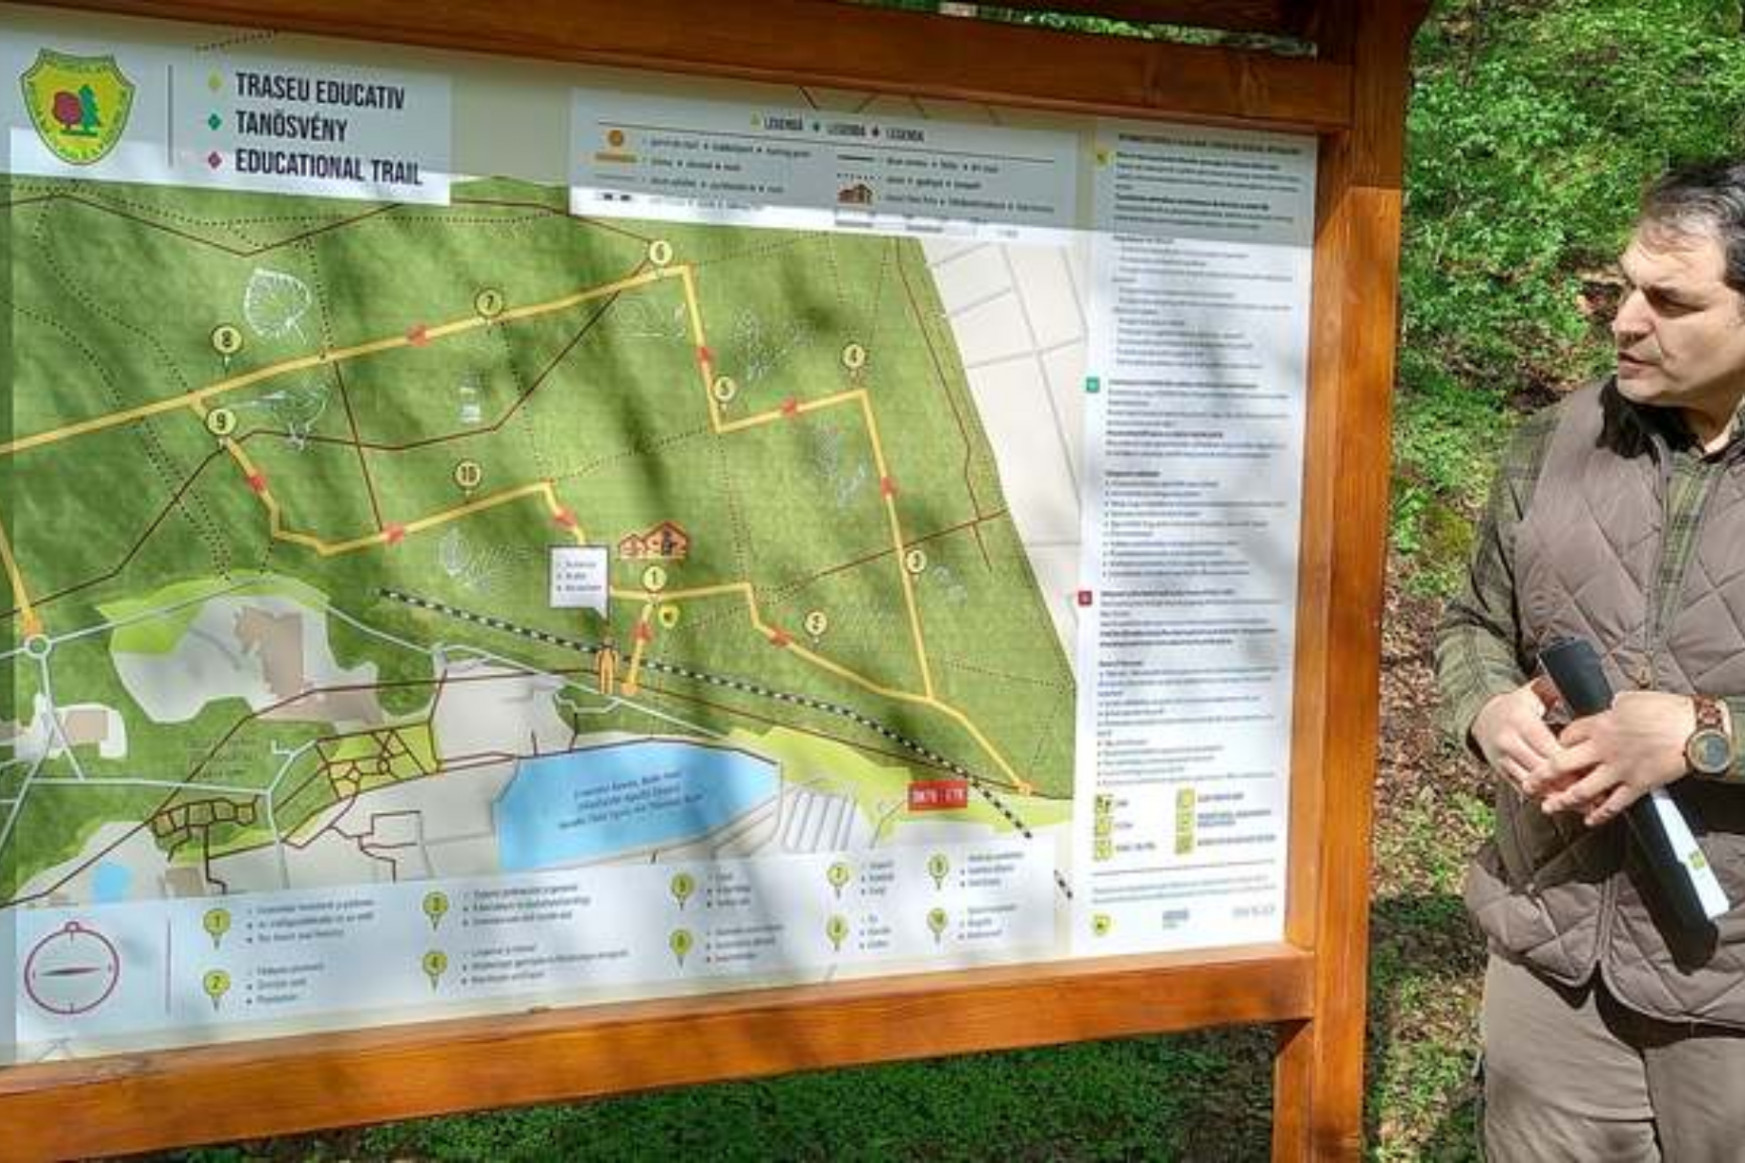 QR kódokkal jelölt erdei tanösvényt avattak Félixfürdőn. A tájékoztatók magyarul is elérhetők